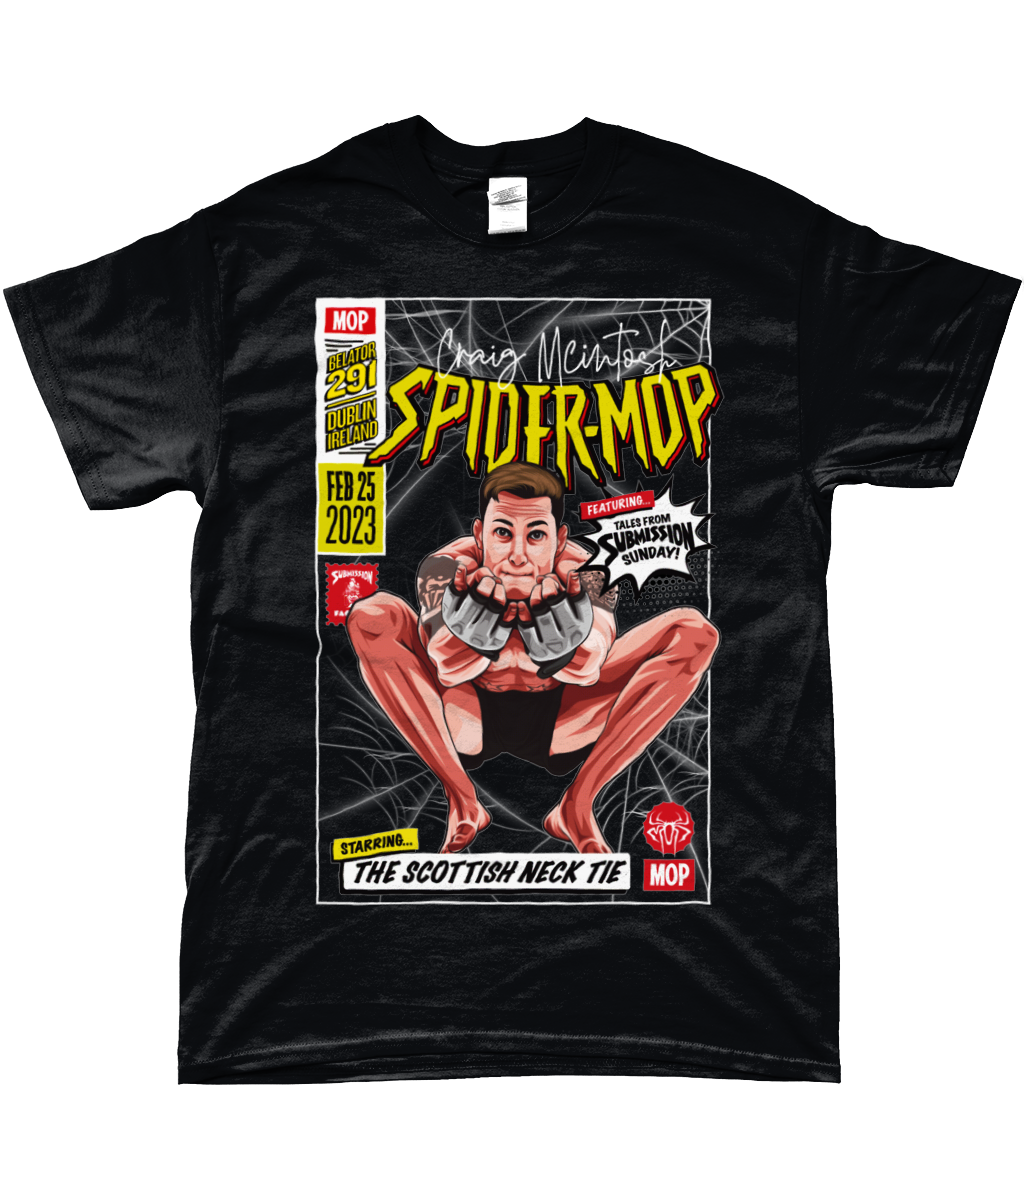 Spider-Mop Comic Book T-Shirt